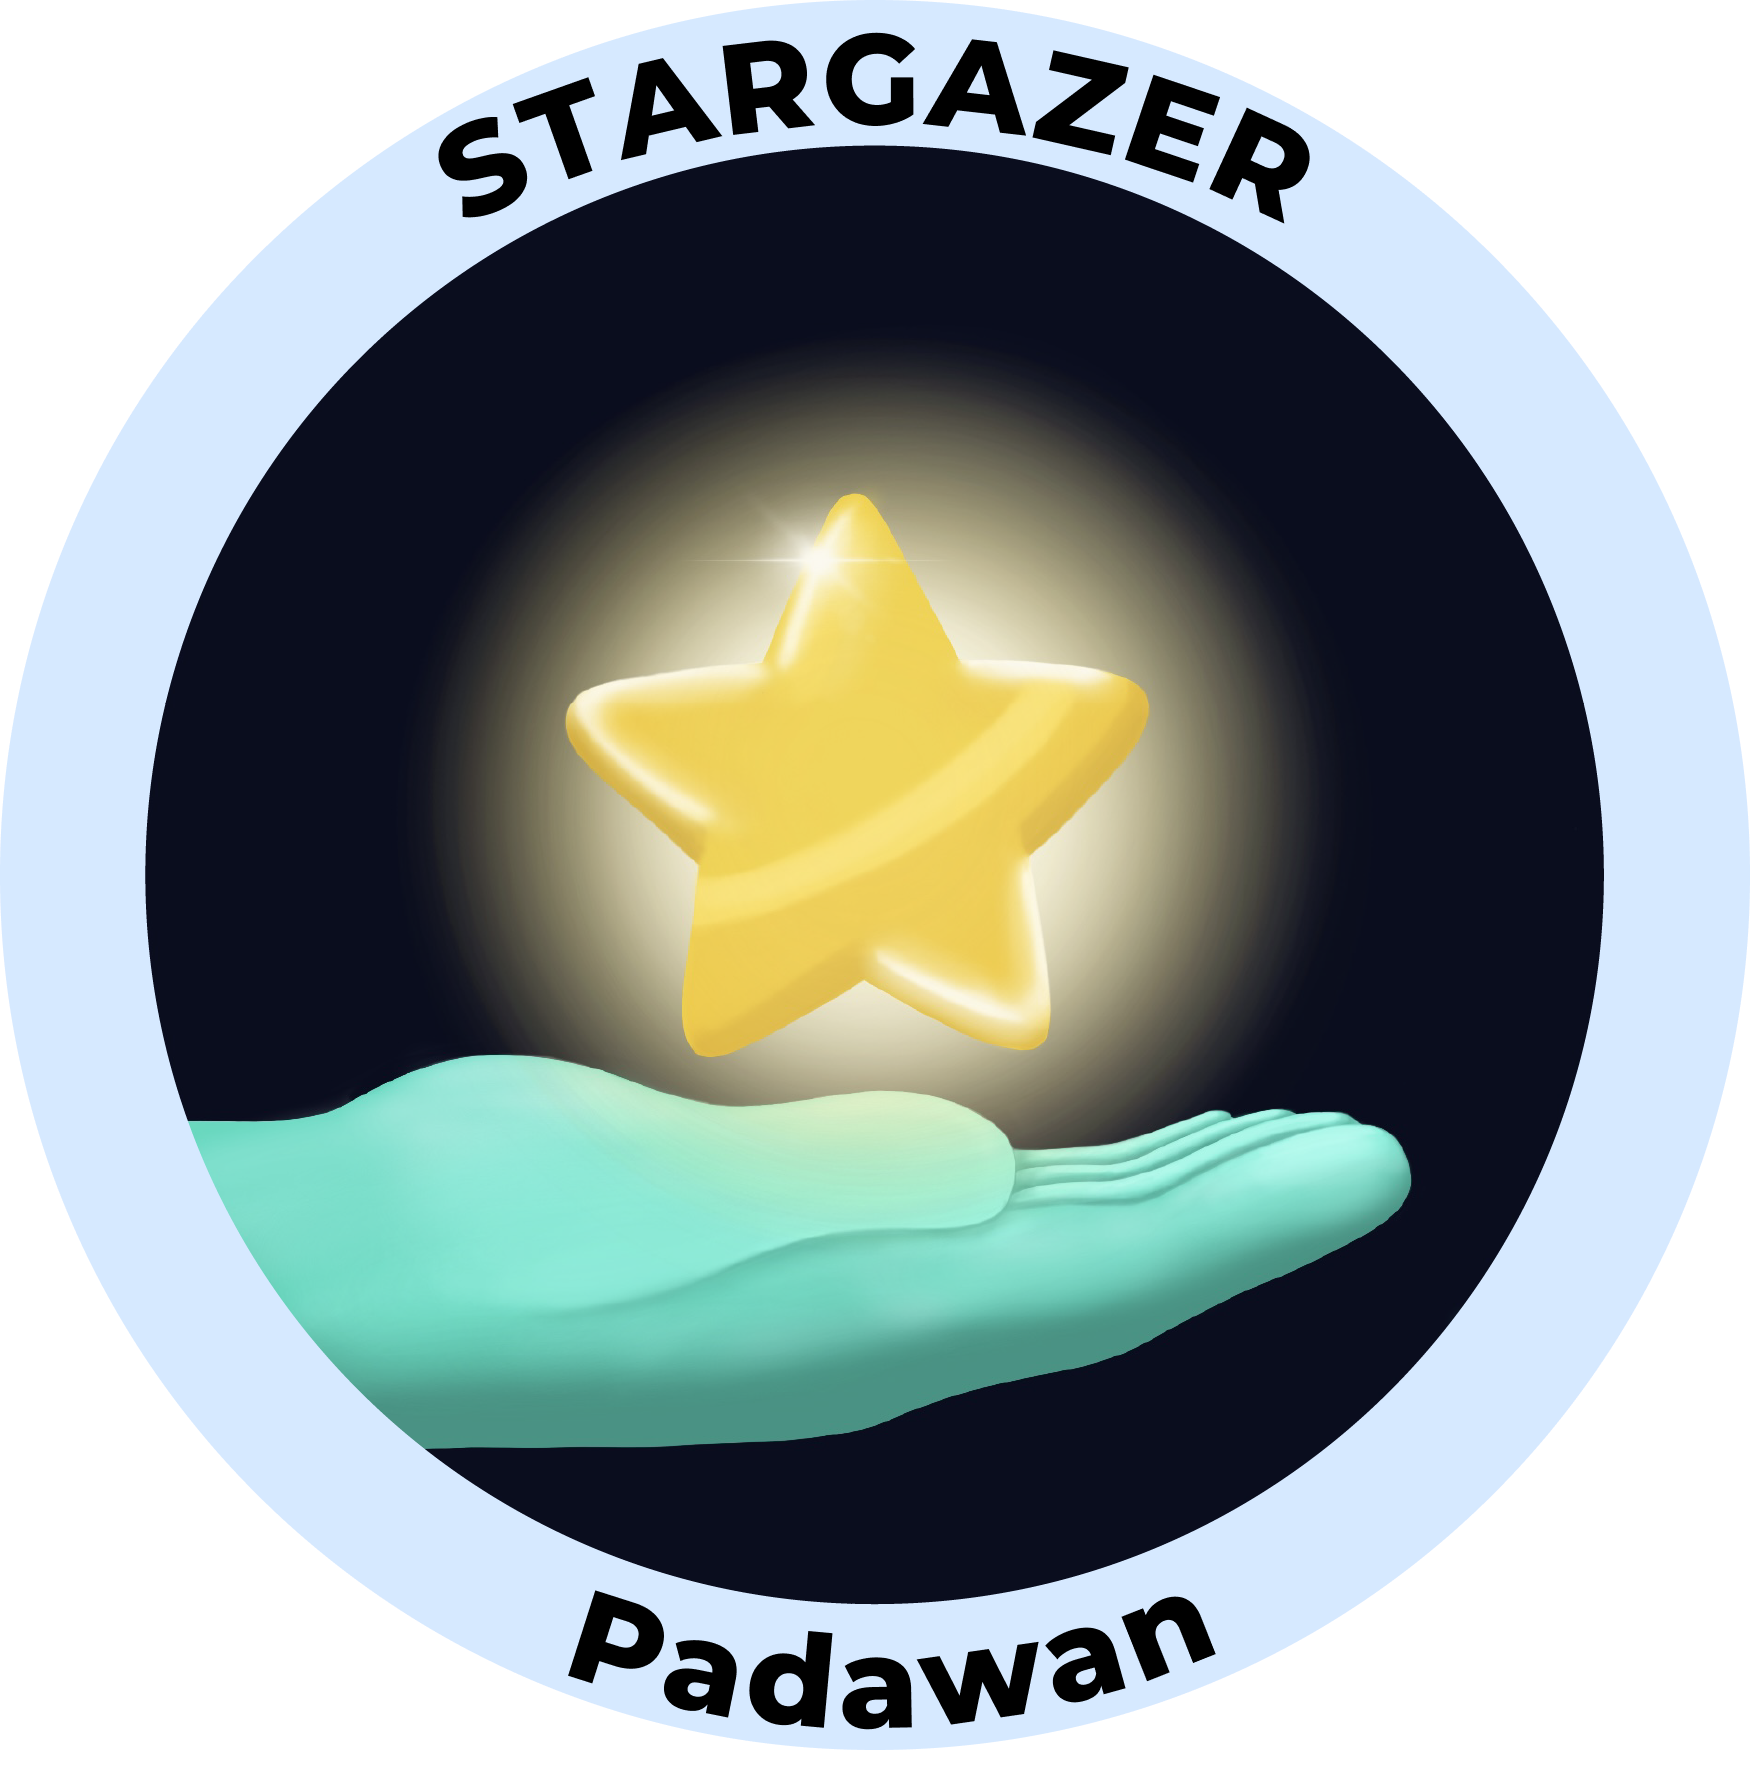 Web3 Badge | Stargazer: Padawan